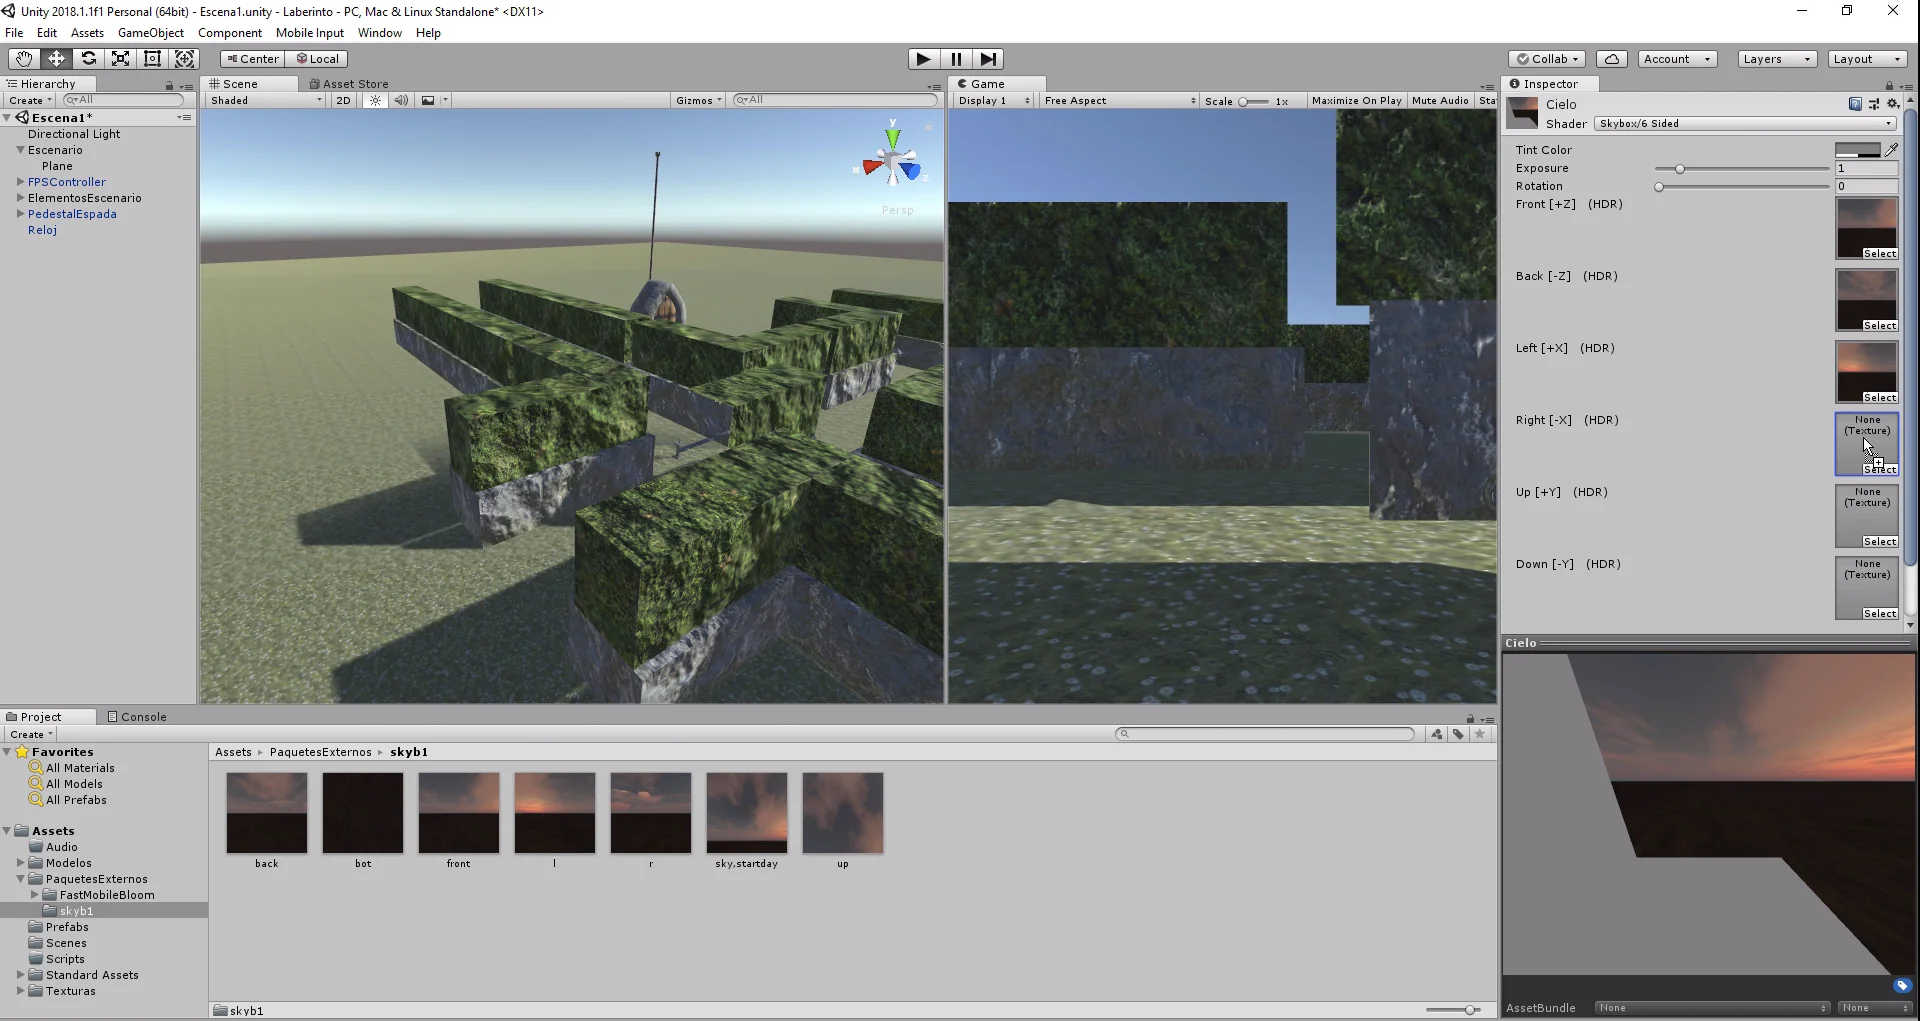 definición de un shader como skybox de 6 lados en programa unity3d desarrollo de videojuegos. colocación de texturas en los slots.